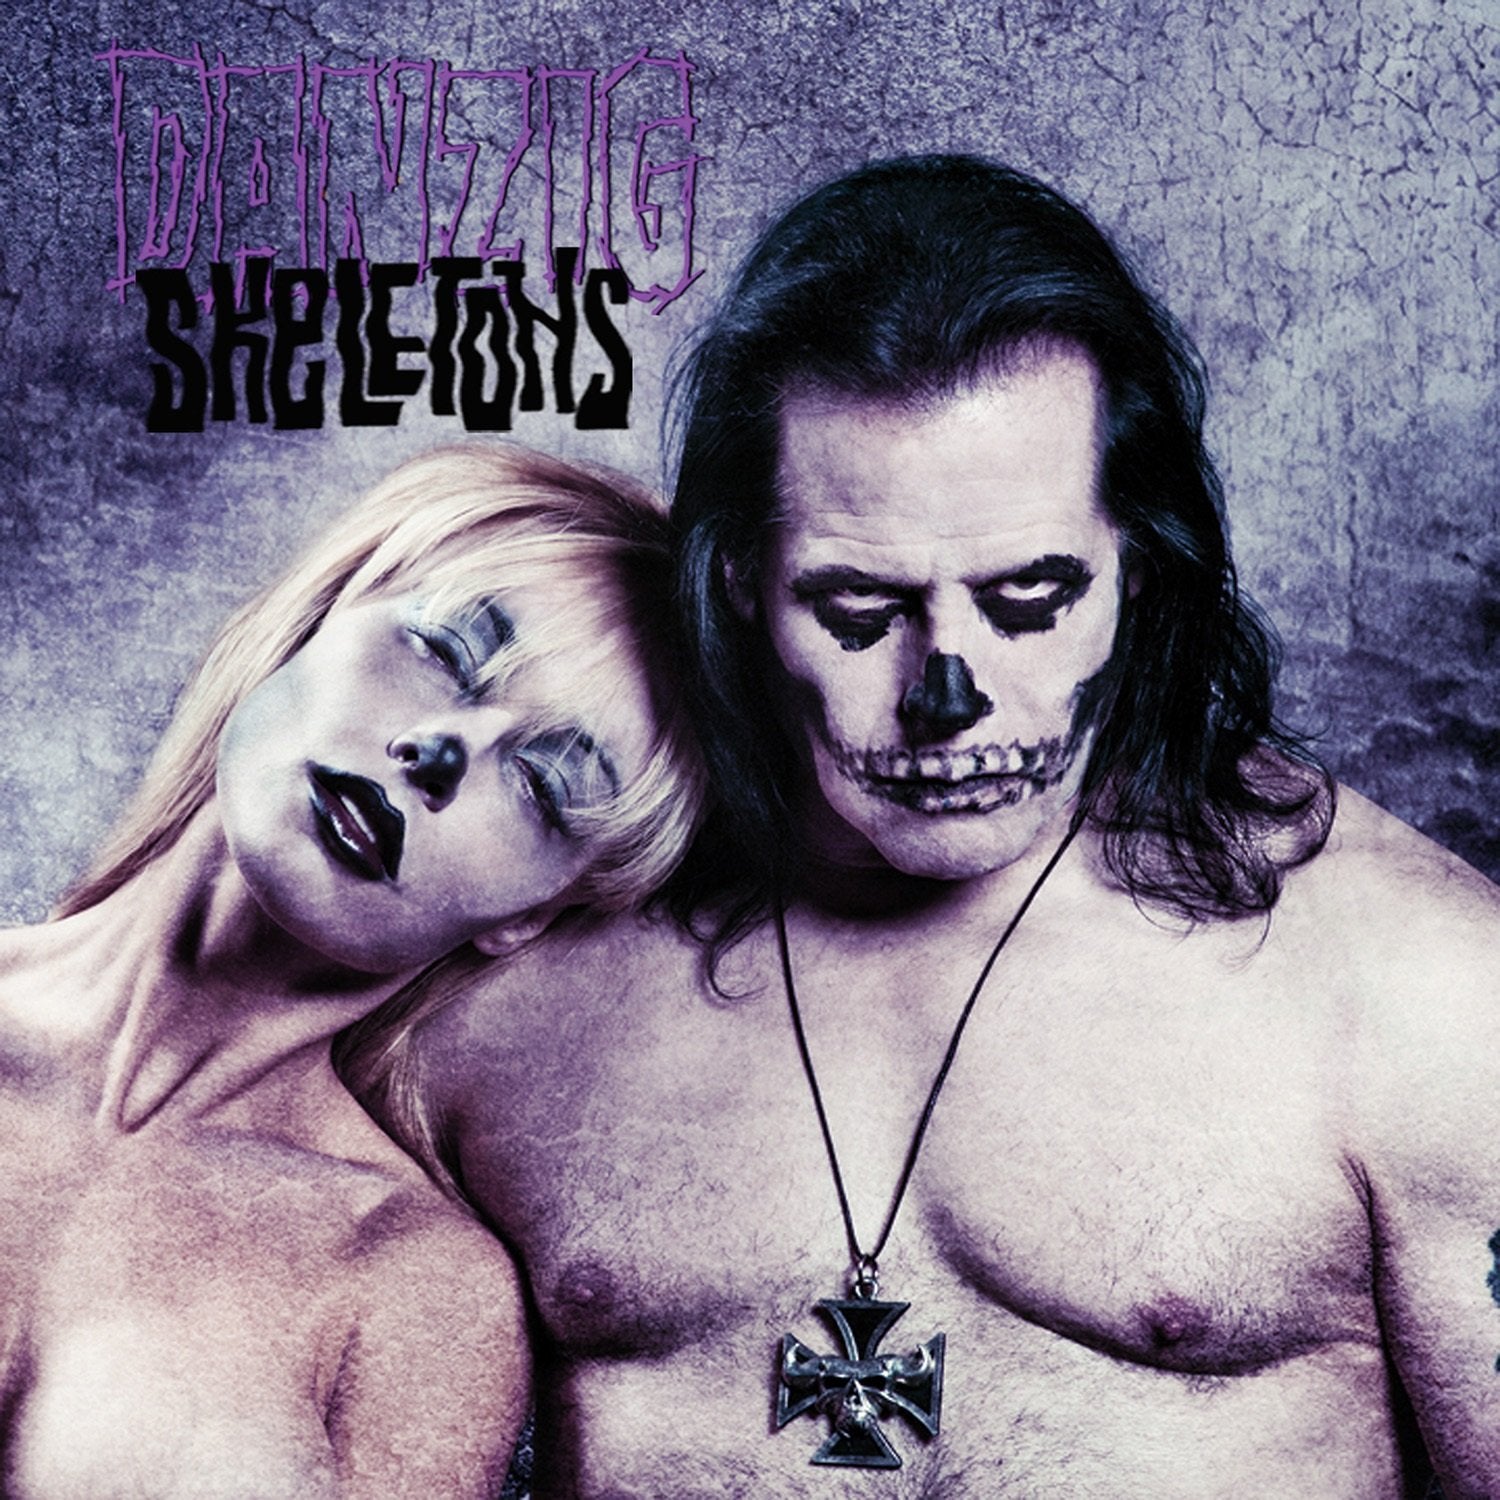 Danzig "Skeletons" [Indie Exclusive "Purple w/ White Swirl & Black Splatter" Vinyl]